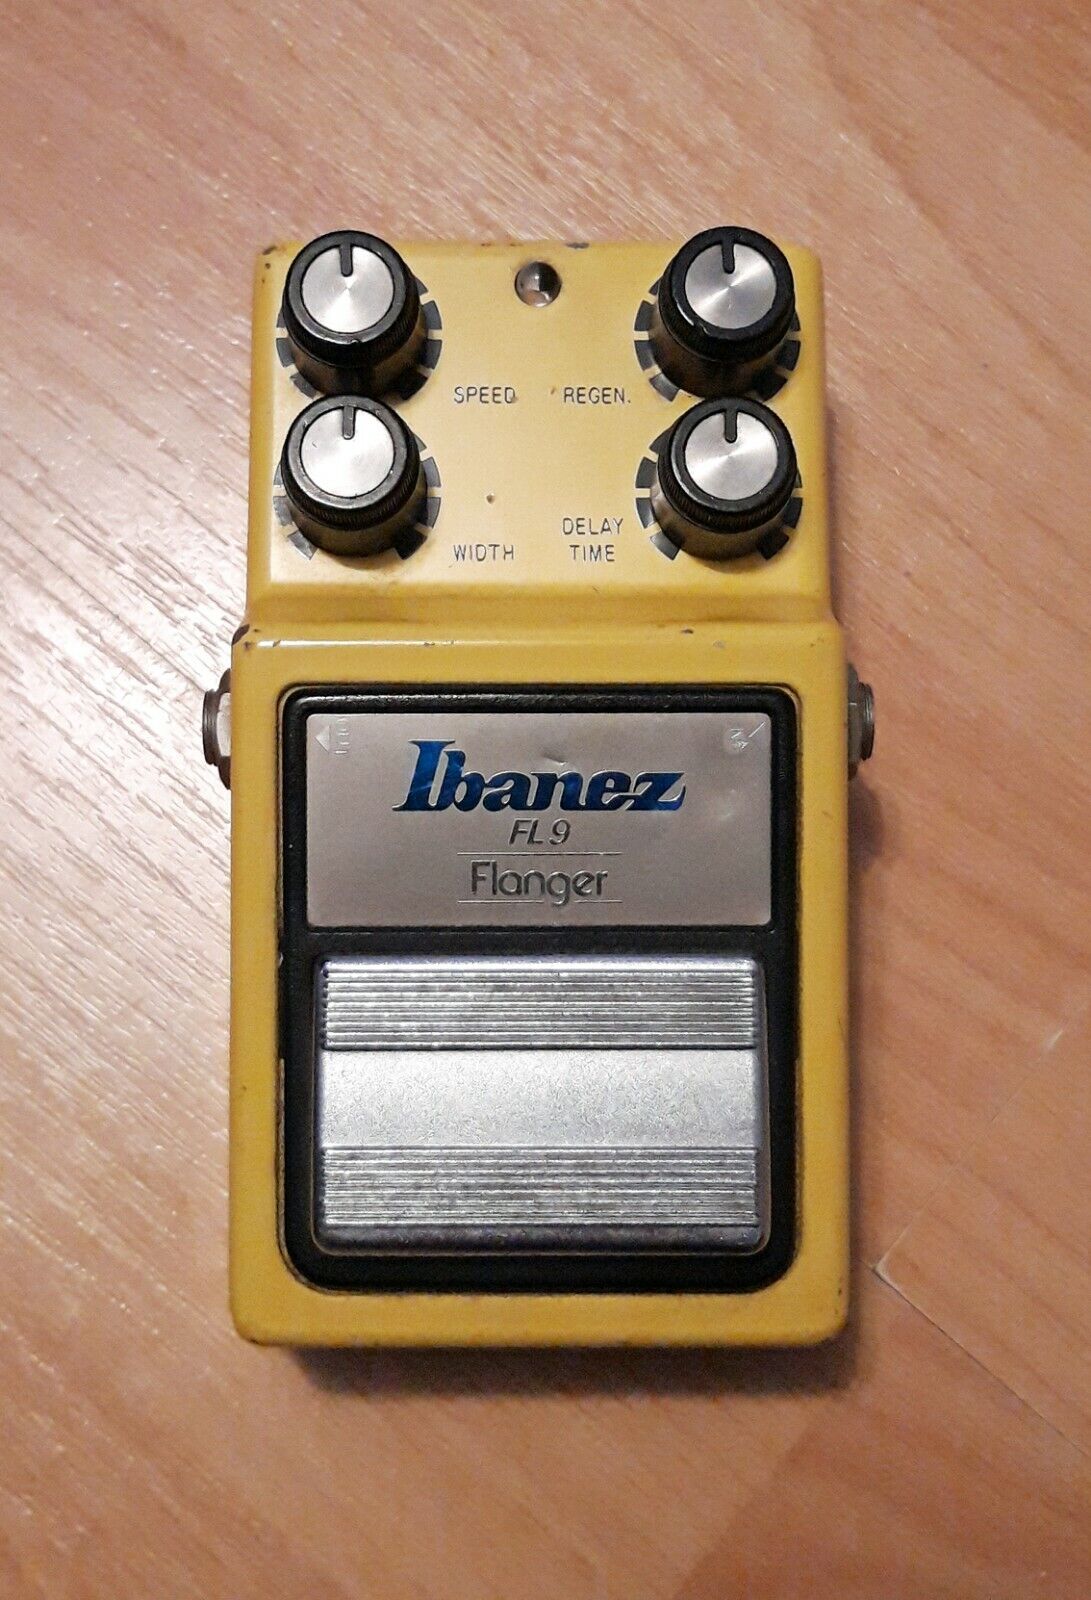 IBANEZ FLANGER FL9 - Vintage Gitarren Effektgerät 1980er Jahre - Made in Japan